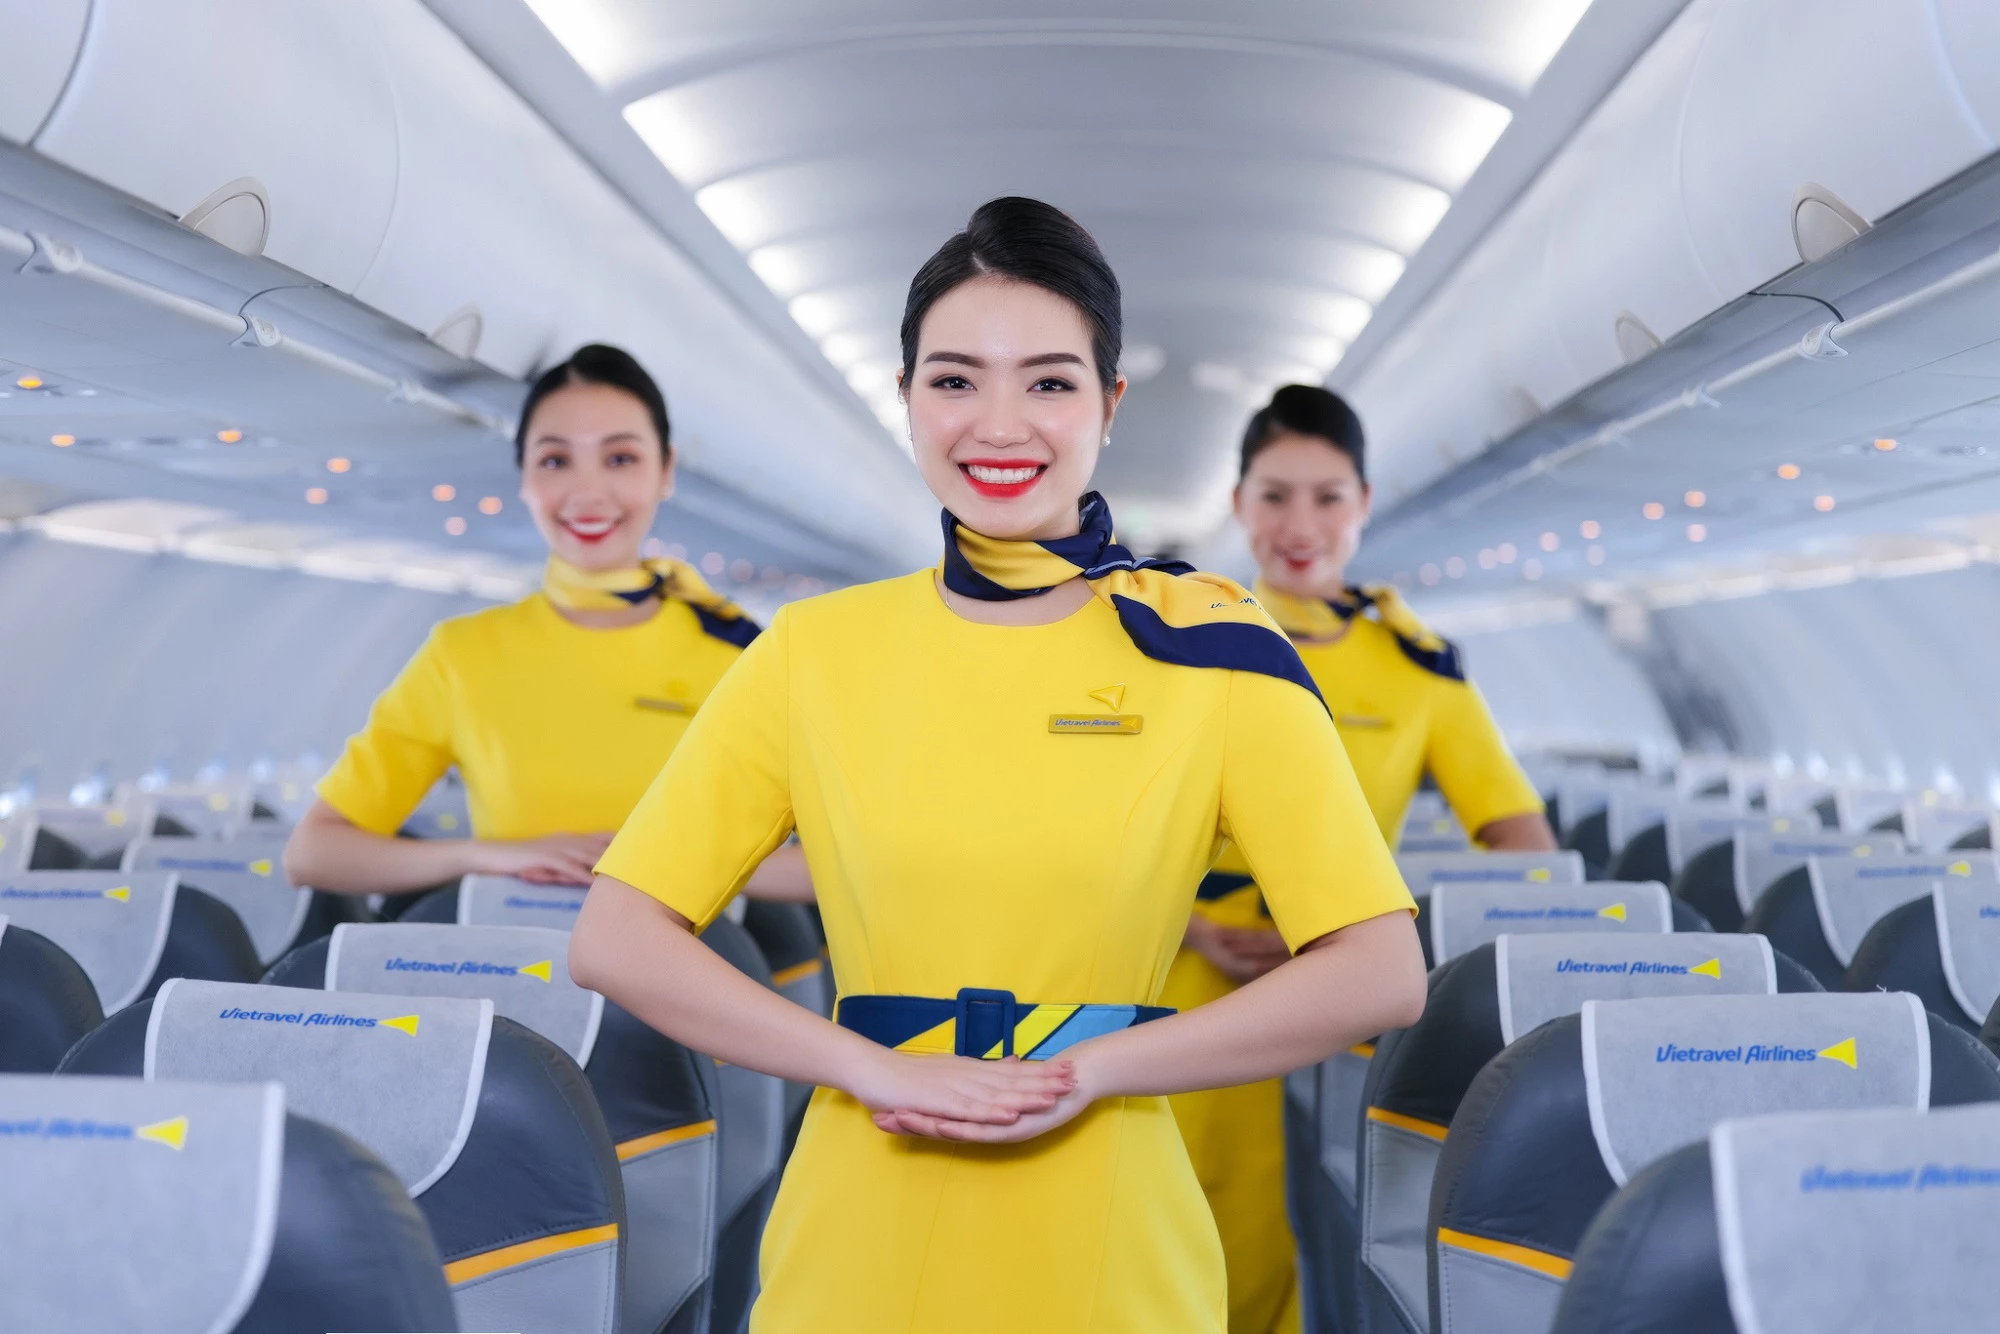 Là hãng hàng không lữ hành đầu tiên của Việt Nam, nên sự khác biệt của Vietravel Airlines sẽ được hiện thực hoá trên các chuyến bay bằng dịch vụ, mỗi tiếp viên sẽ trở thành một hướng dẫn viên du lịch để giúp hành khách có những trải nghiệm thú vị trên mỗi chuyến bay. 